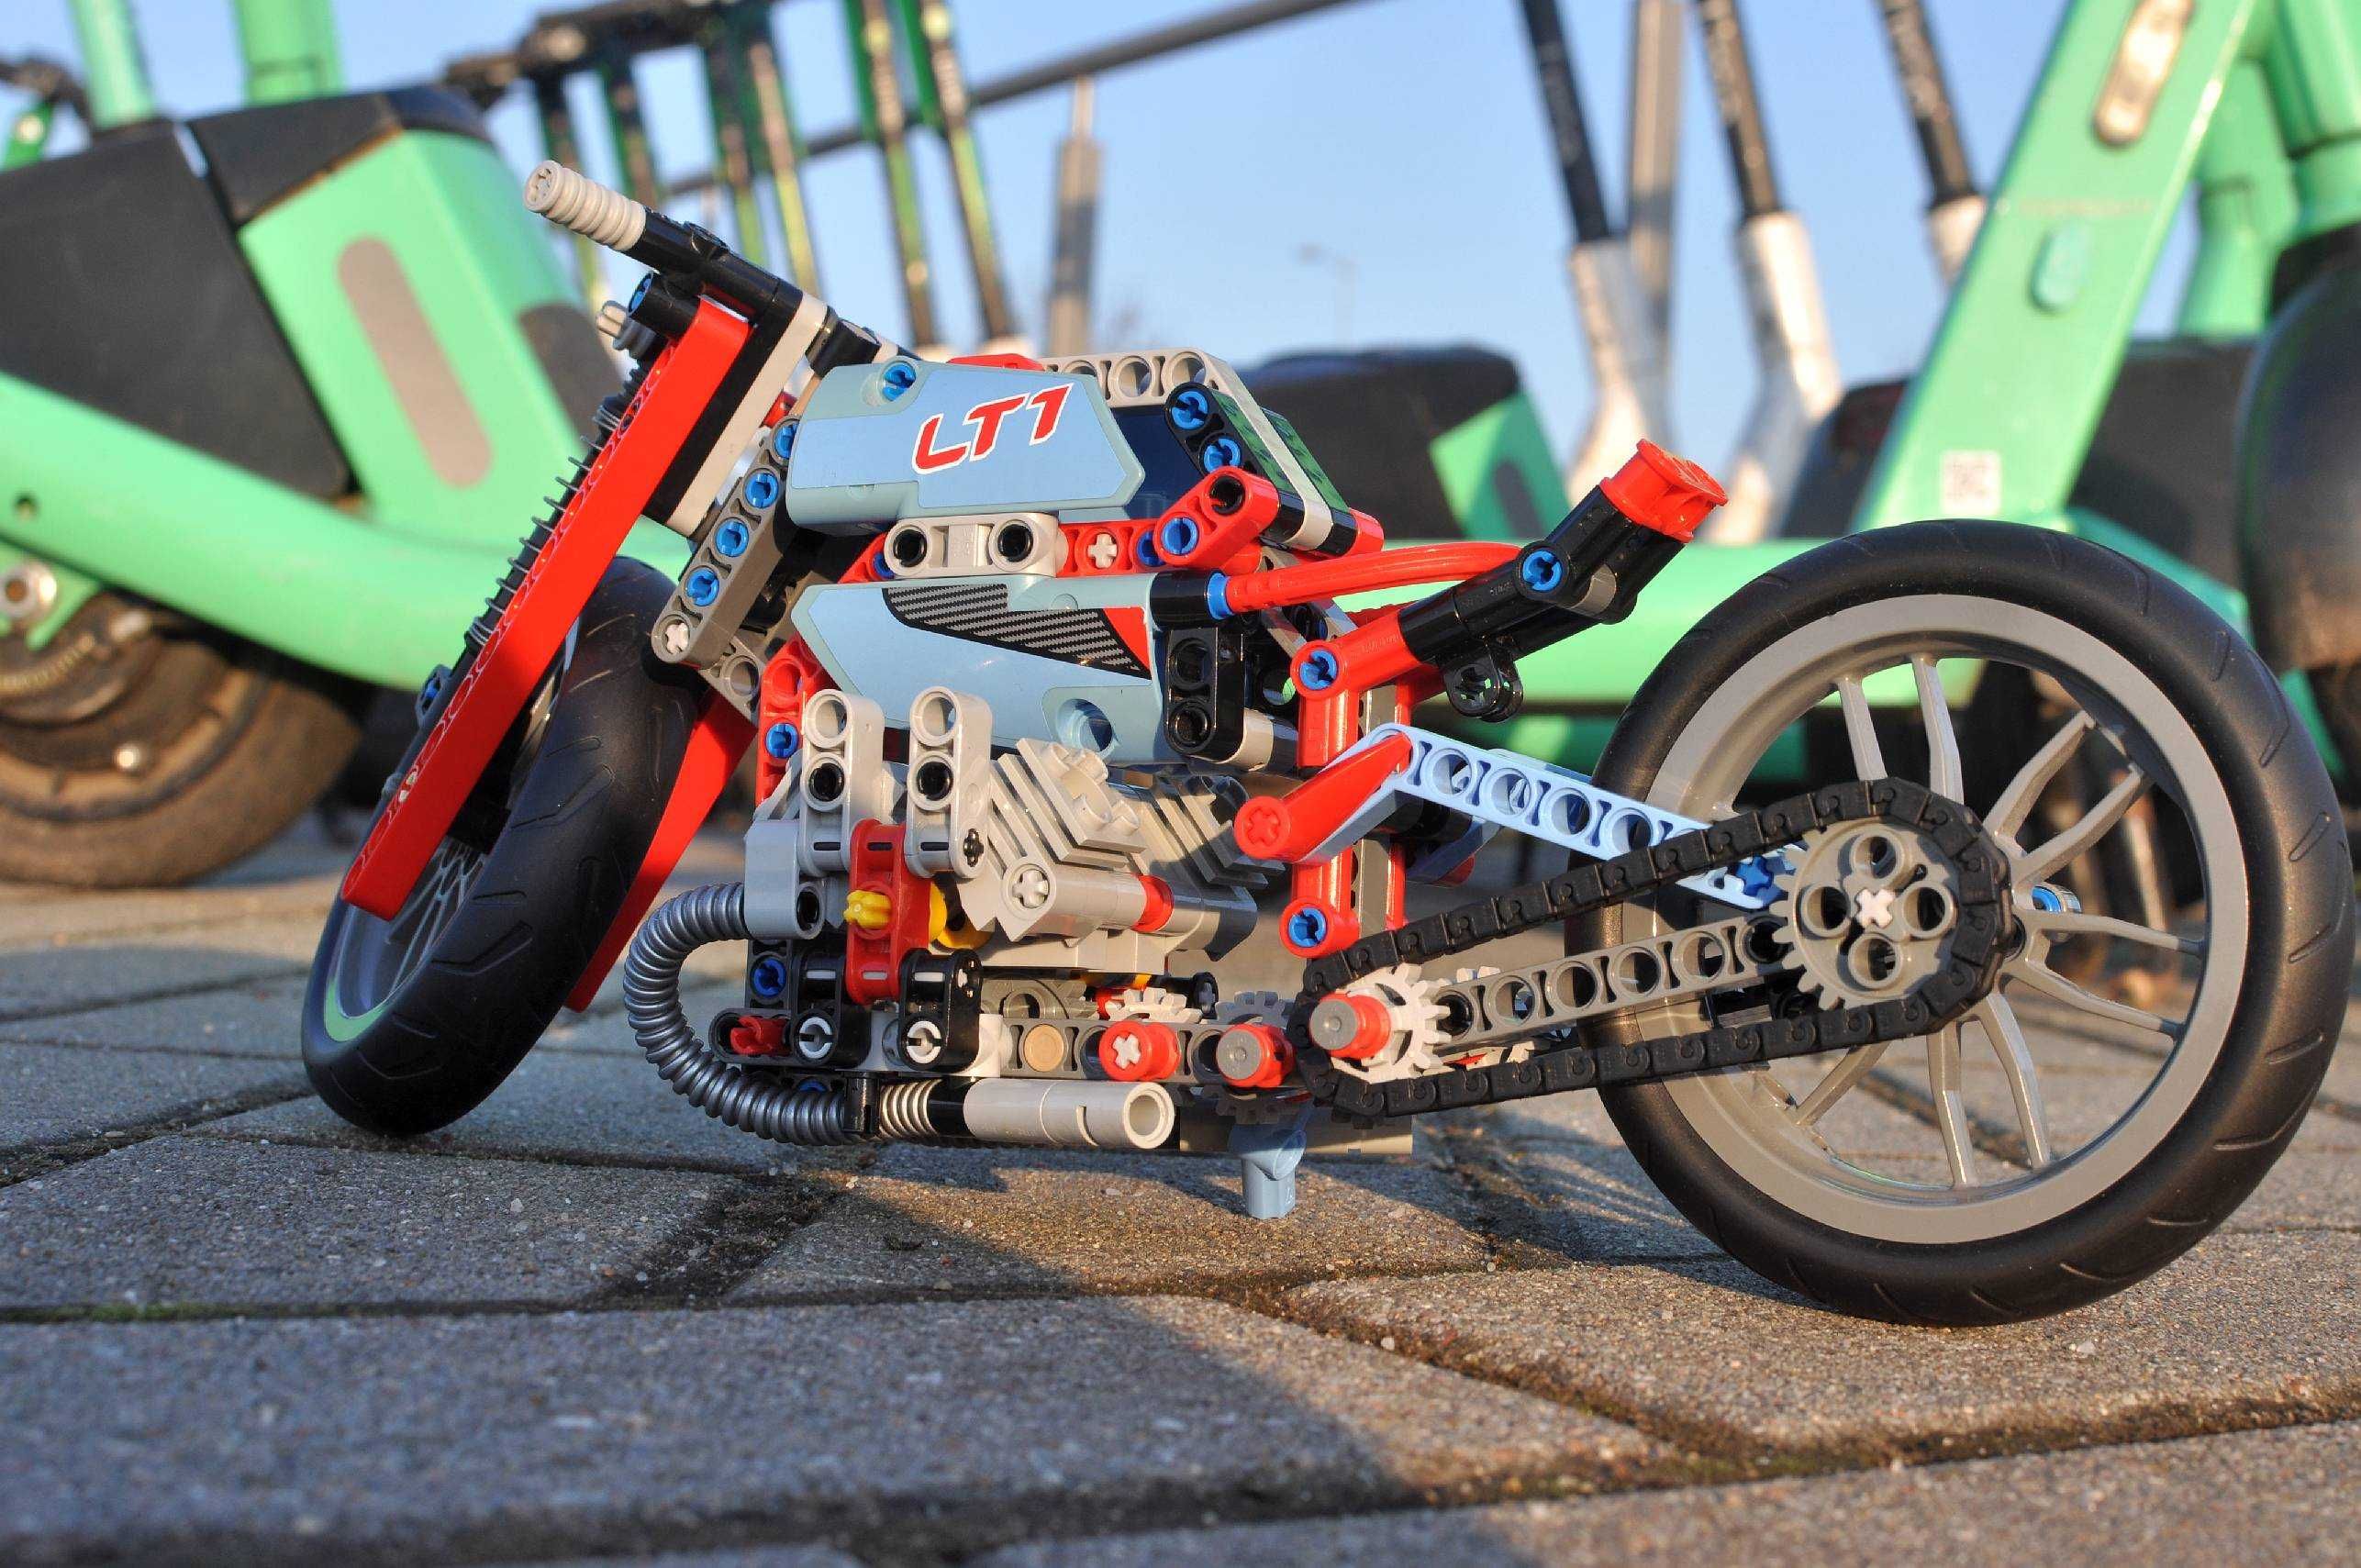 Lego technic 42036 motocykl miejski